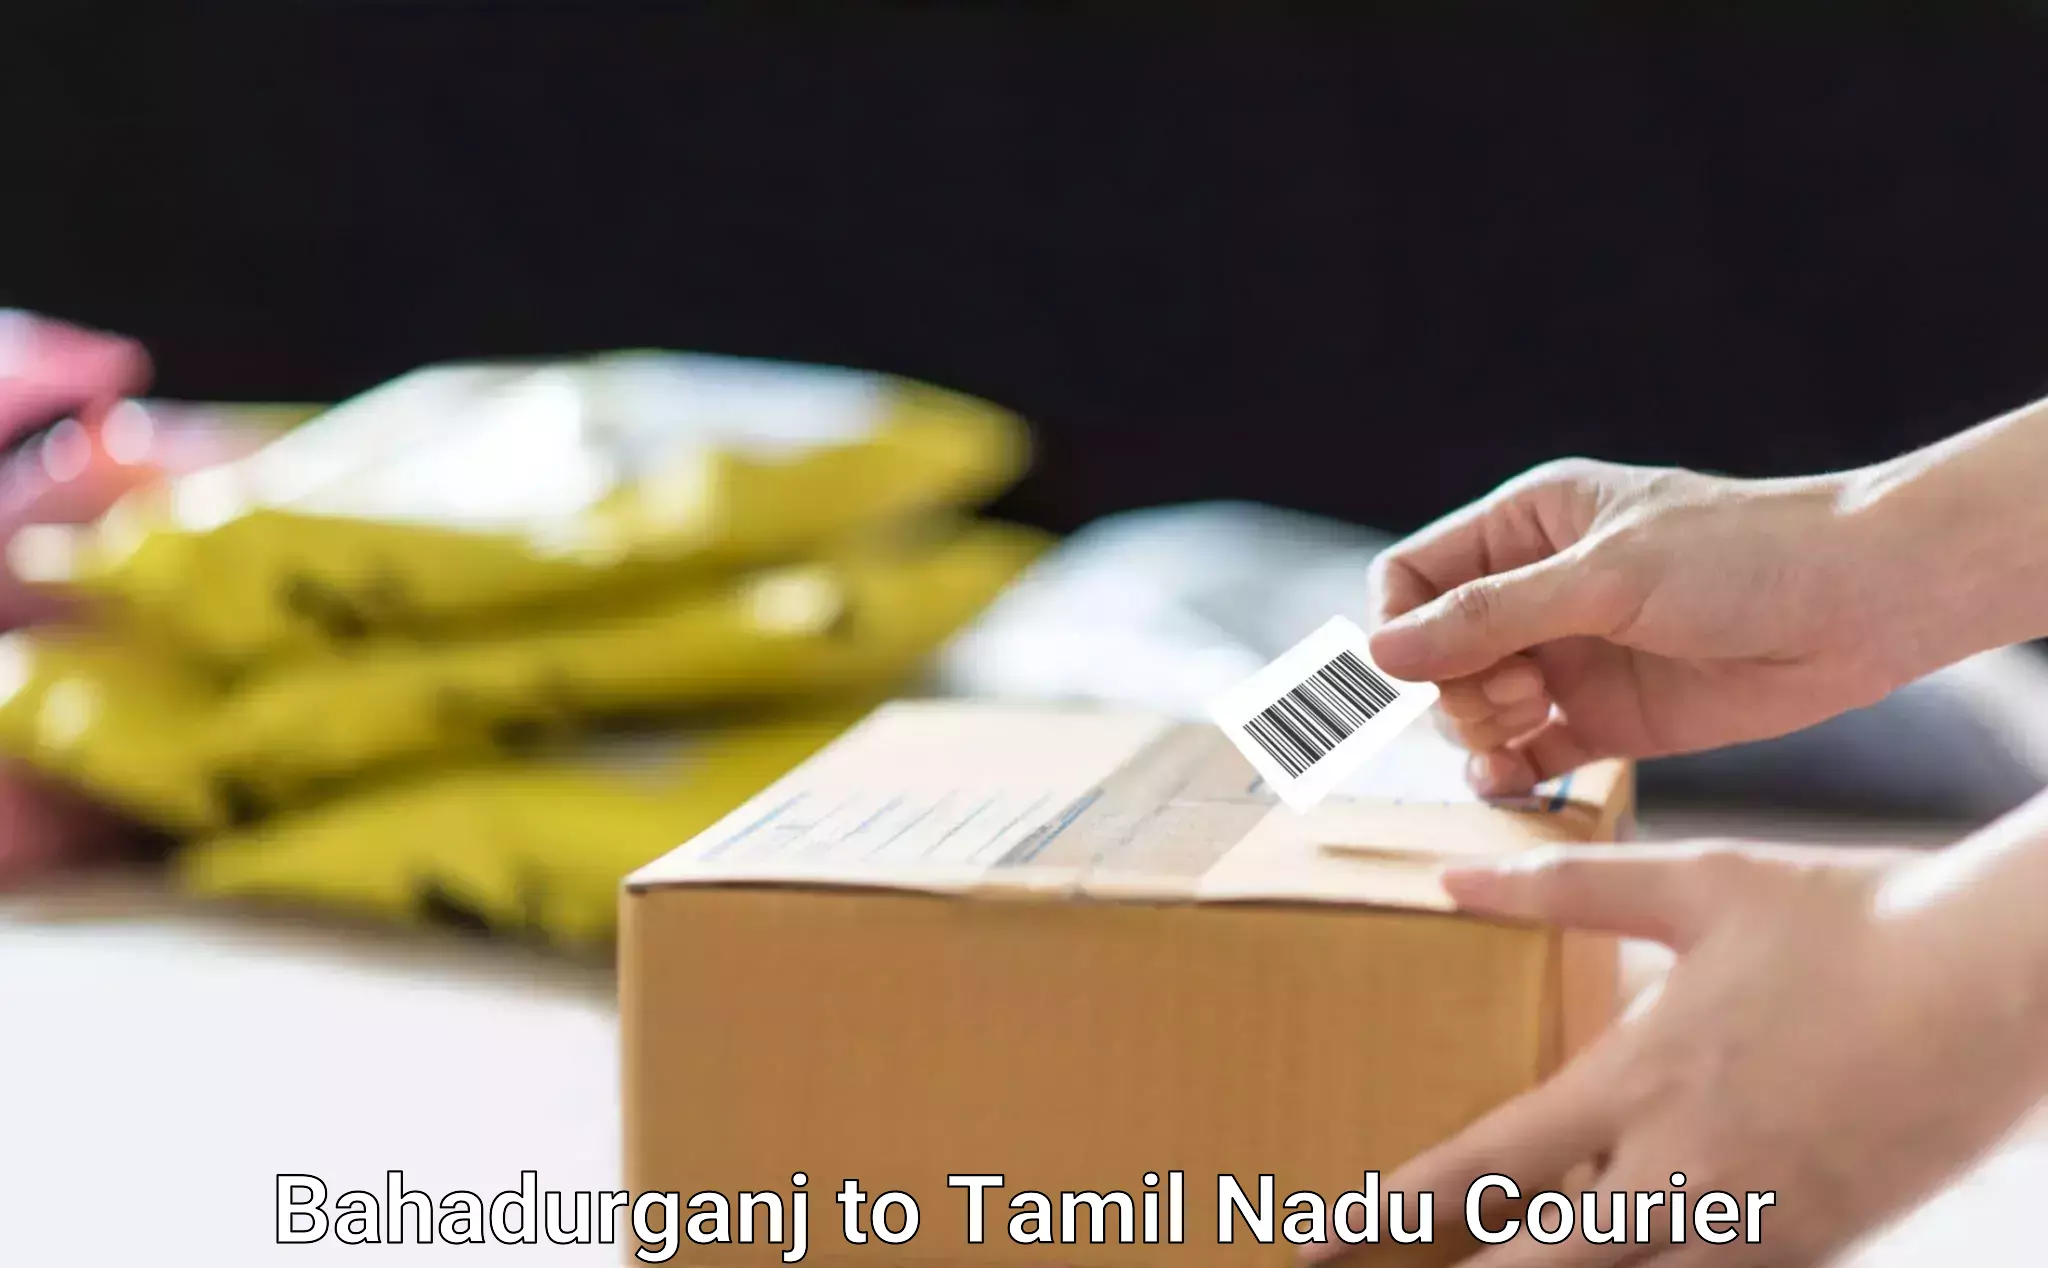 Professional furniture transport Bahadurganj to Tamil Nadu